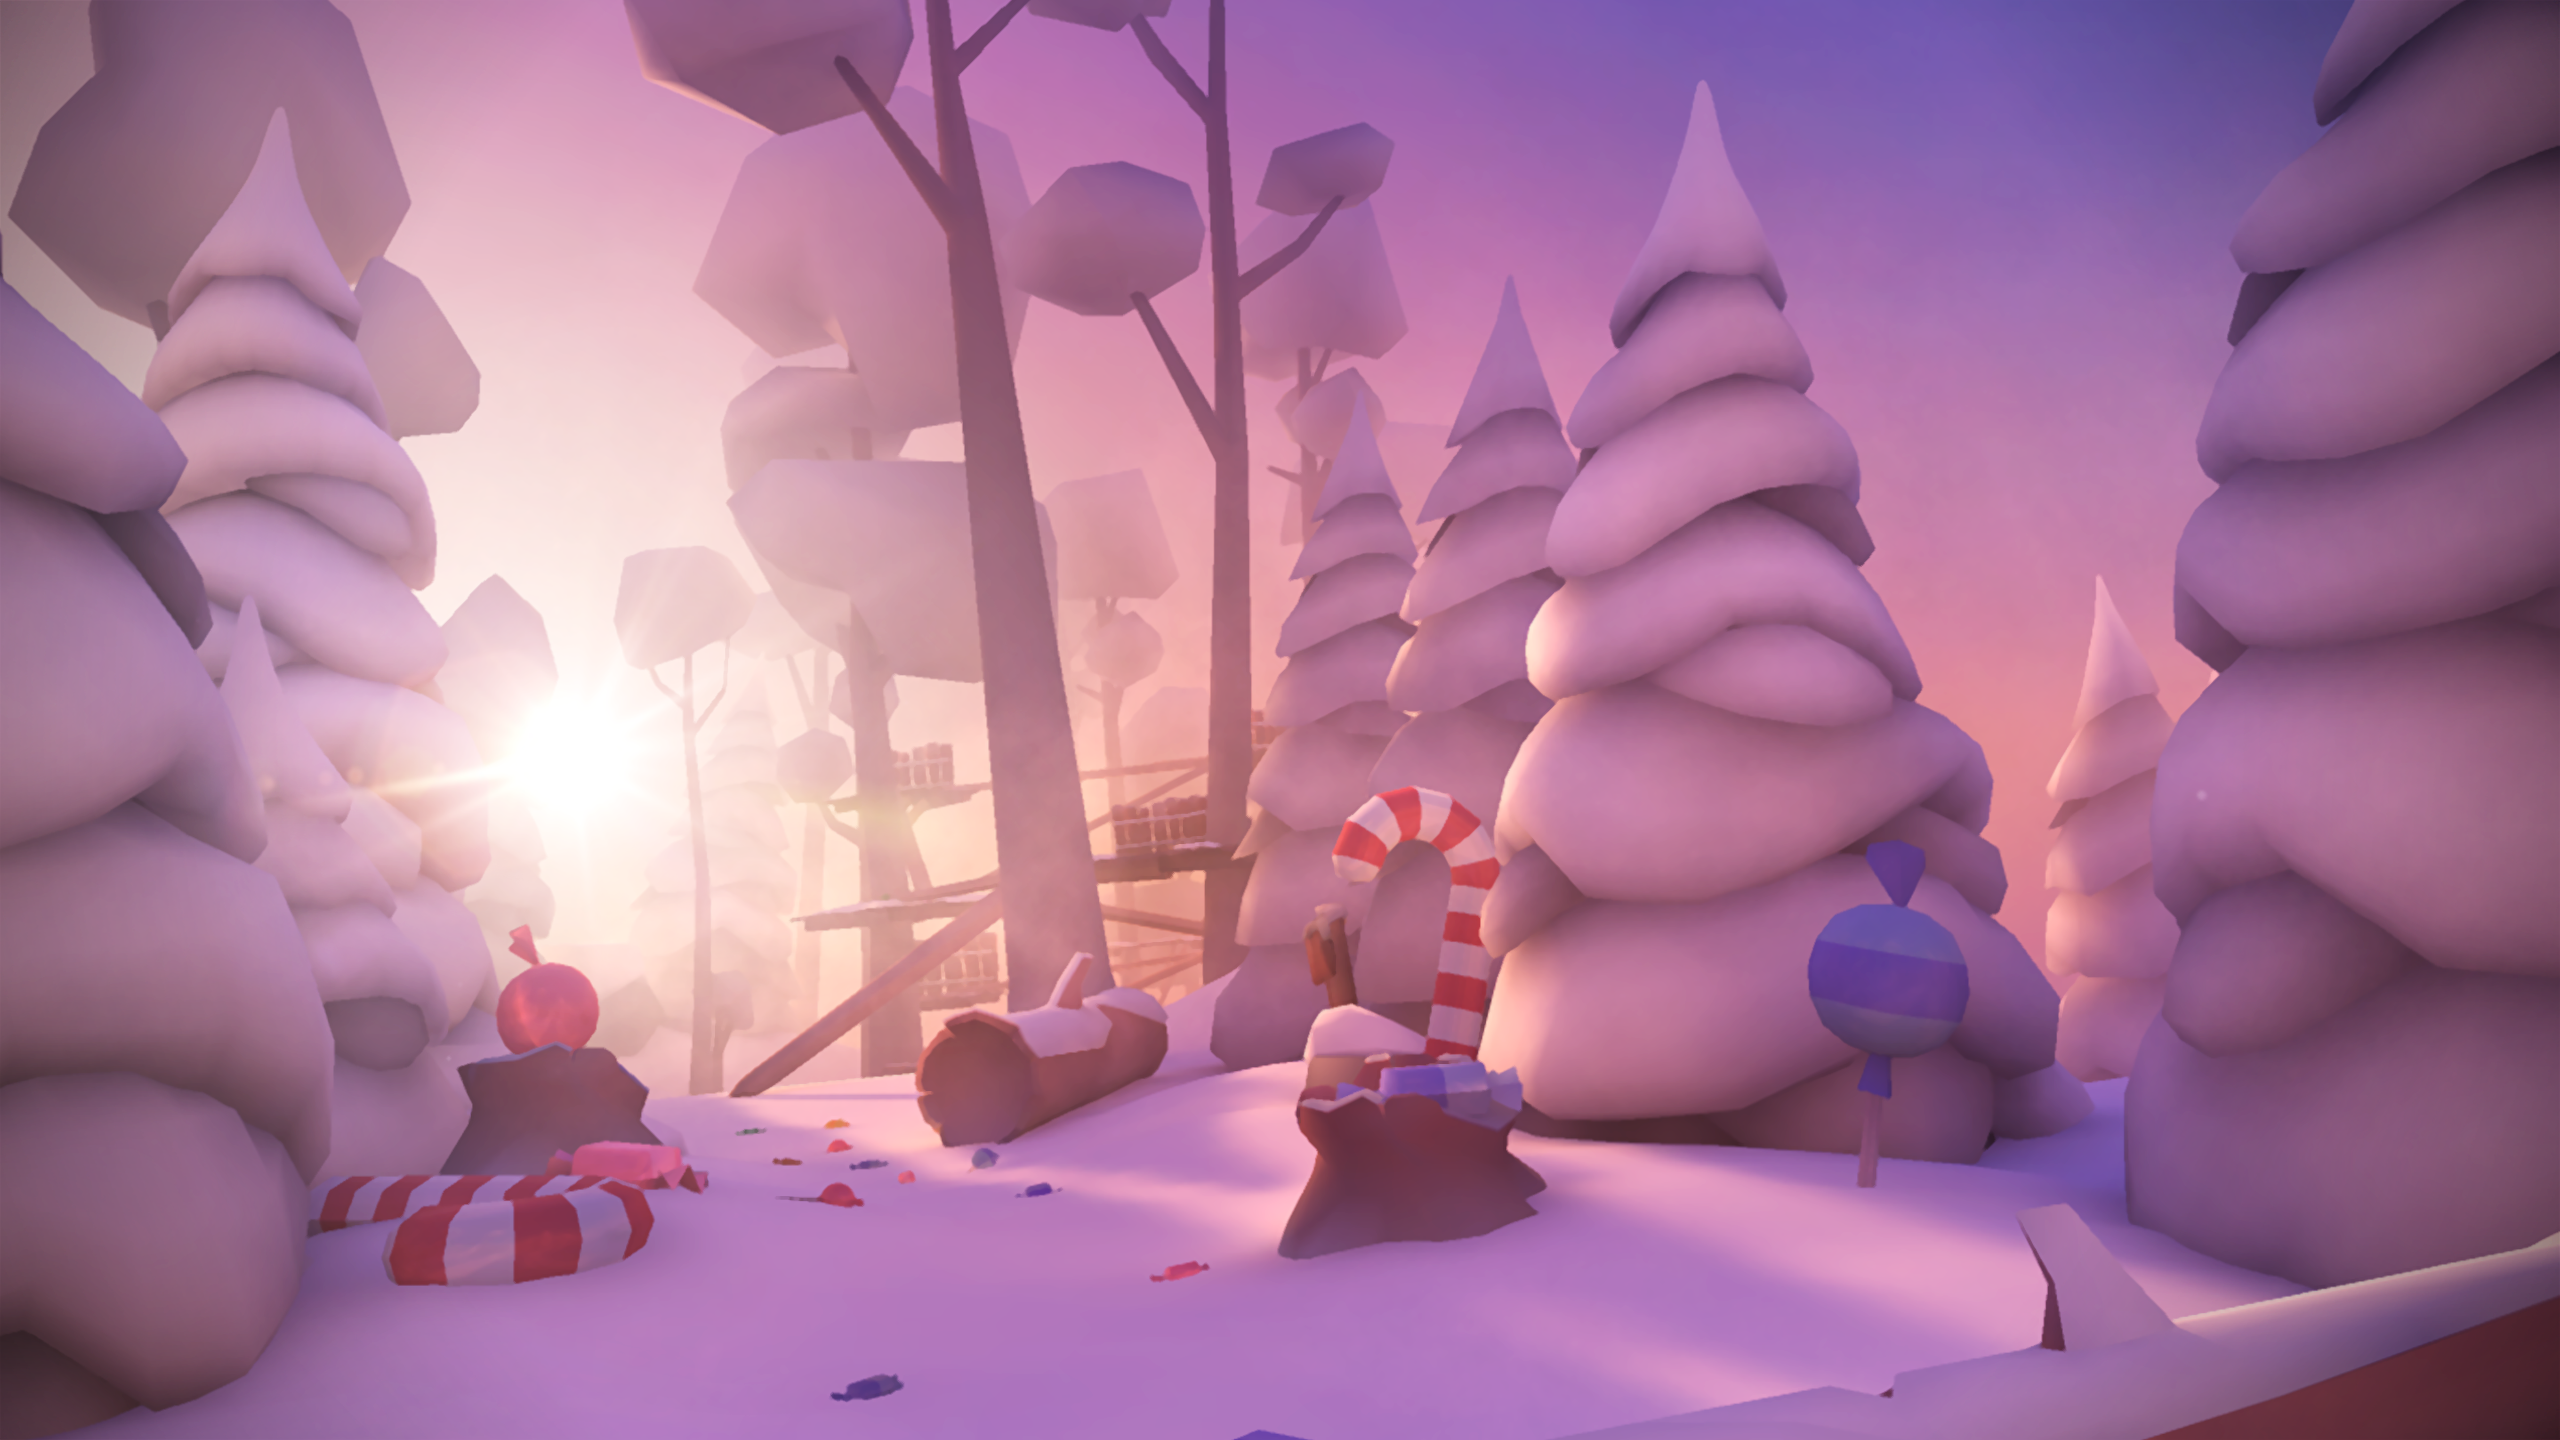 Screenshot 1 of Merry Snowballs (мобильный, 360 и картон) 